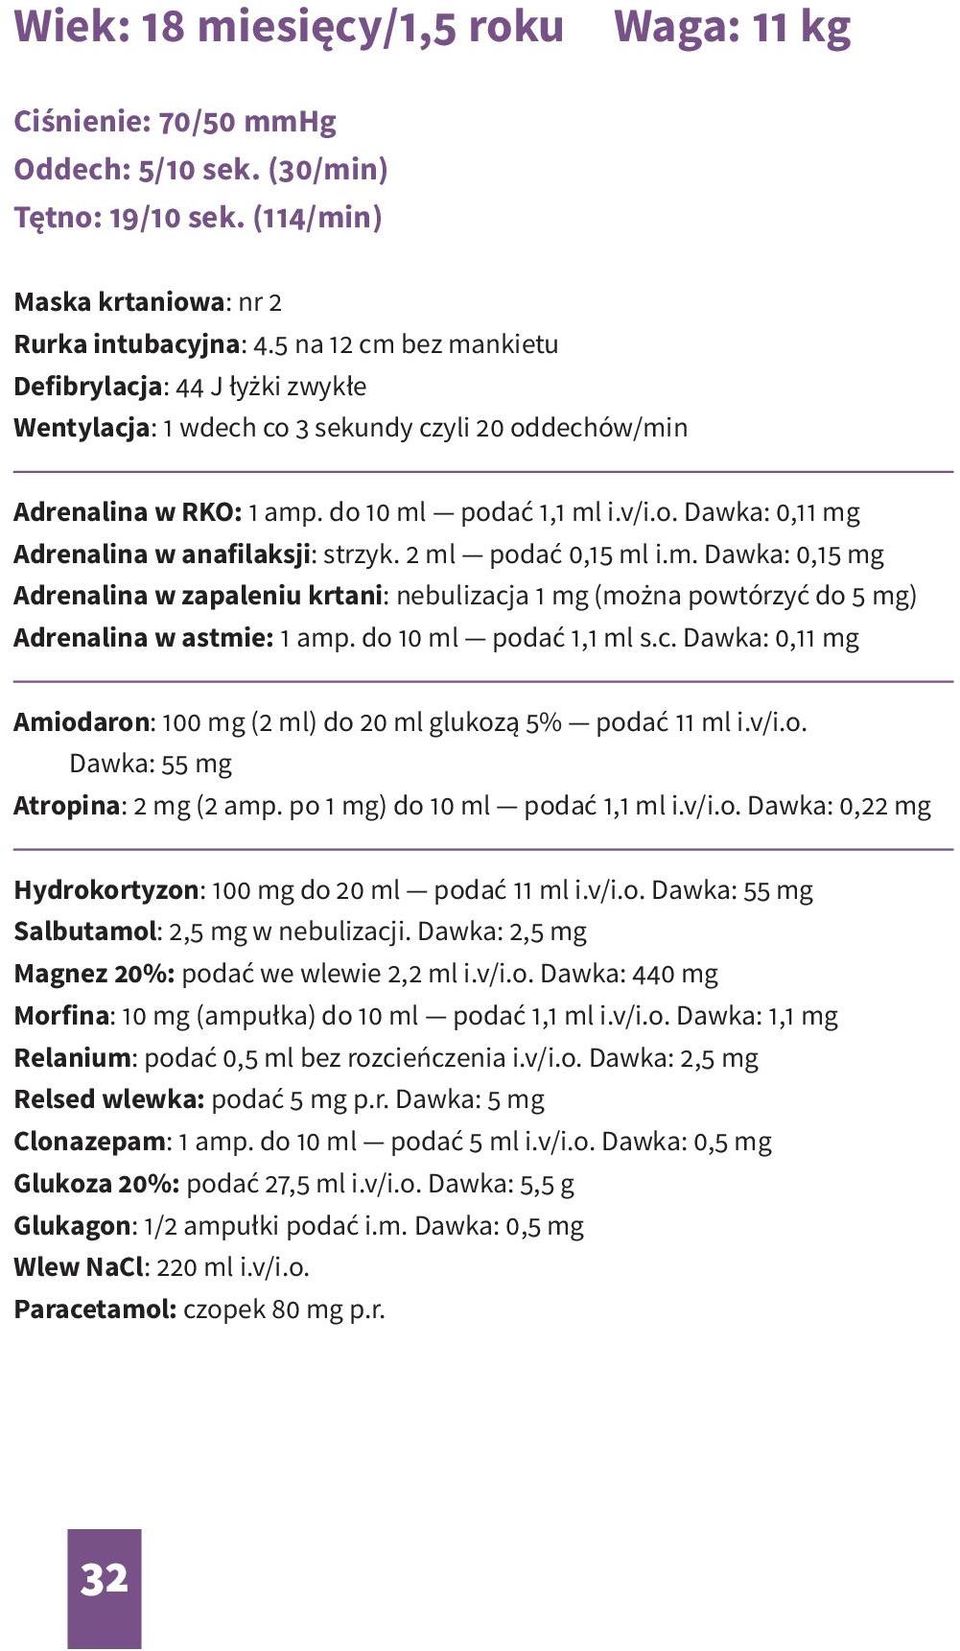 2 ml podać 0,15 ml i.m. Dawka: 0,15 mg Adrenalina w zapaleniu krtani: nebulizacja 1 mg (można powtórzyć do 5 mg) Adrenalina w astmie: 1 amp. do 10 ml podać 1,1 ml s.c. Dawka: 0,11 mg Amiodaron: 100 mg (2 ml) do 20 ml glukozą 5% podać 11 ml i.